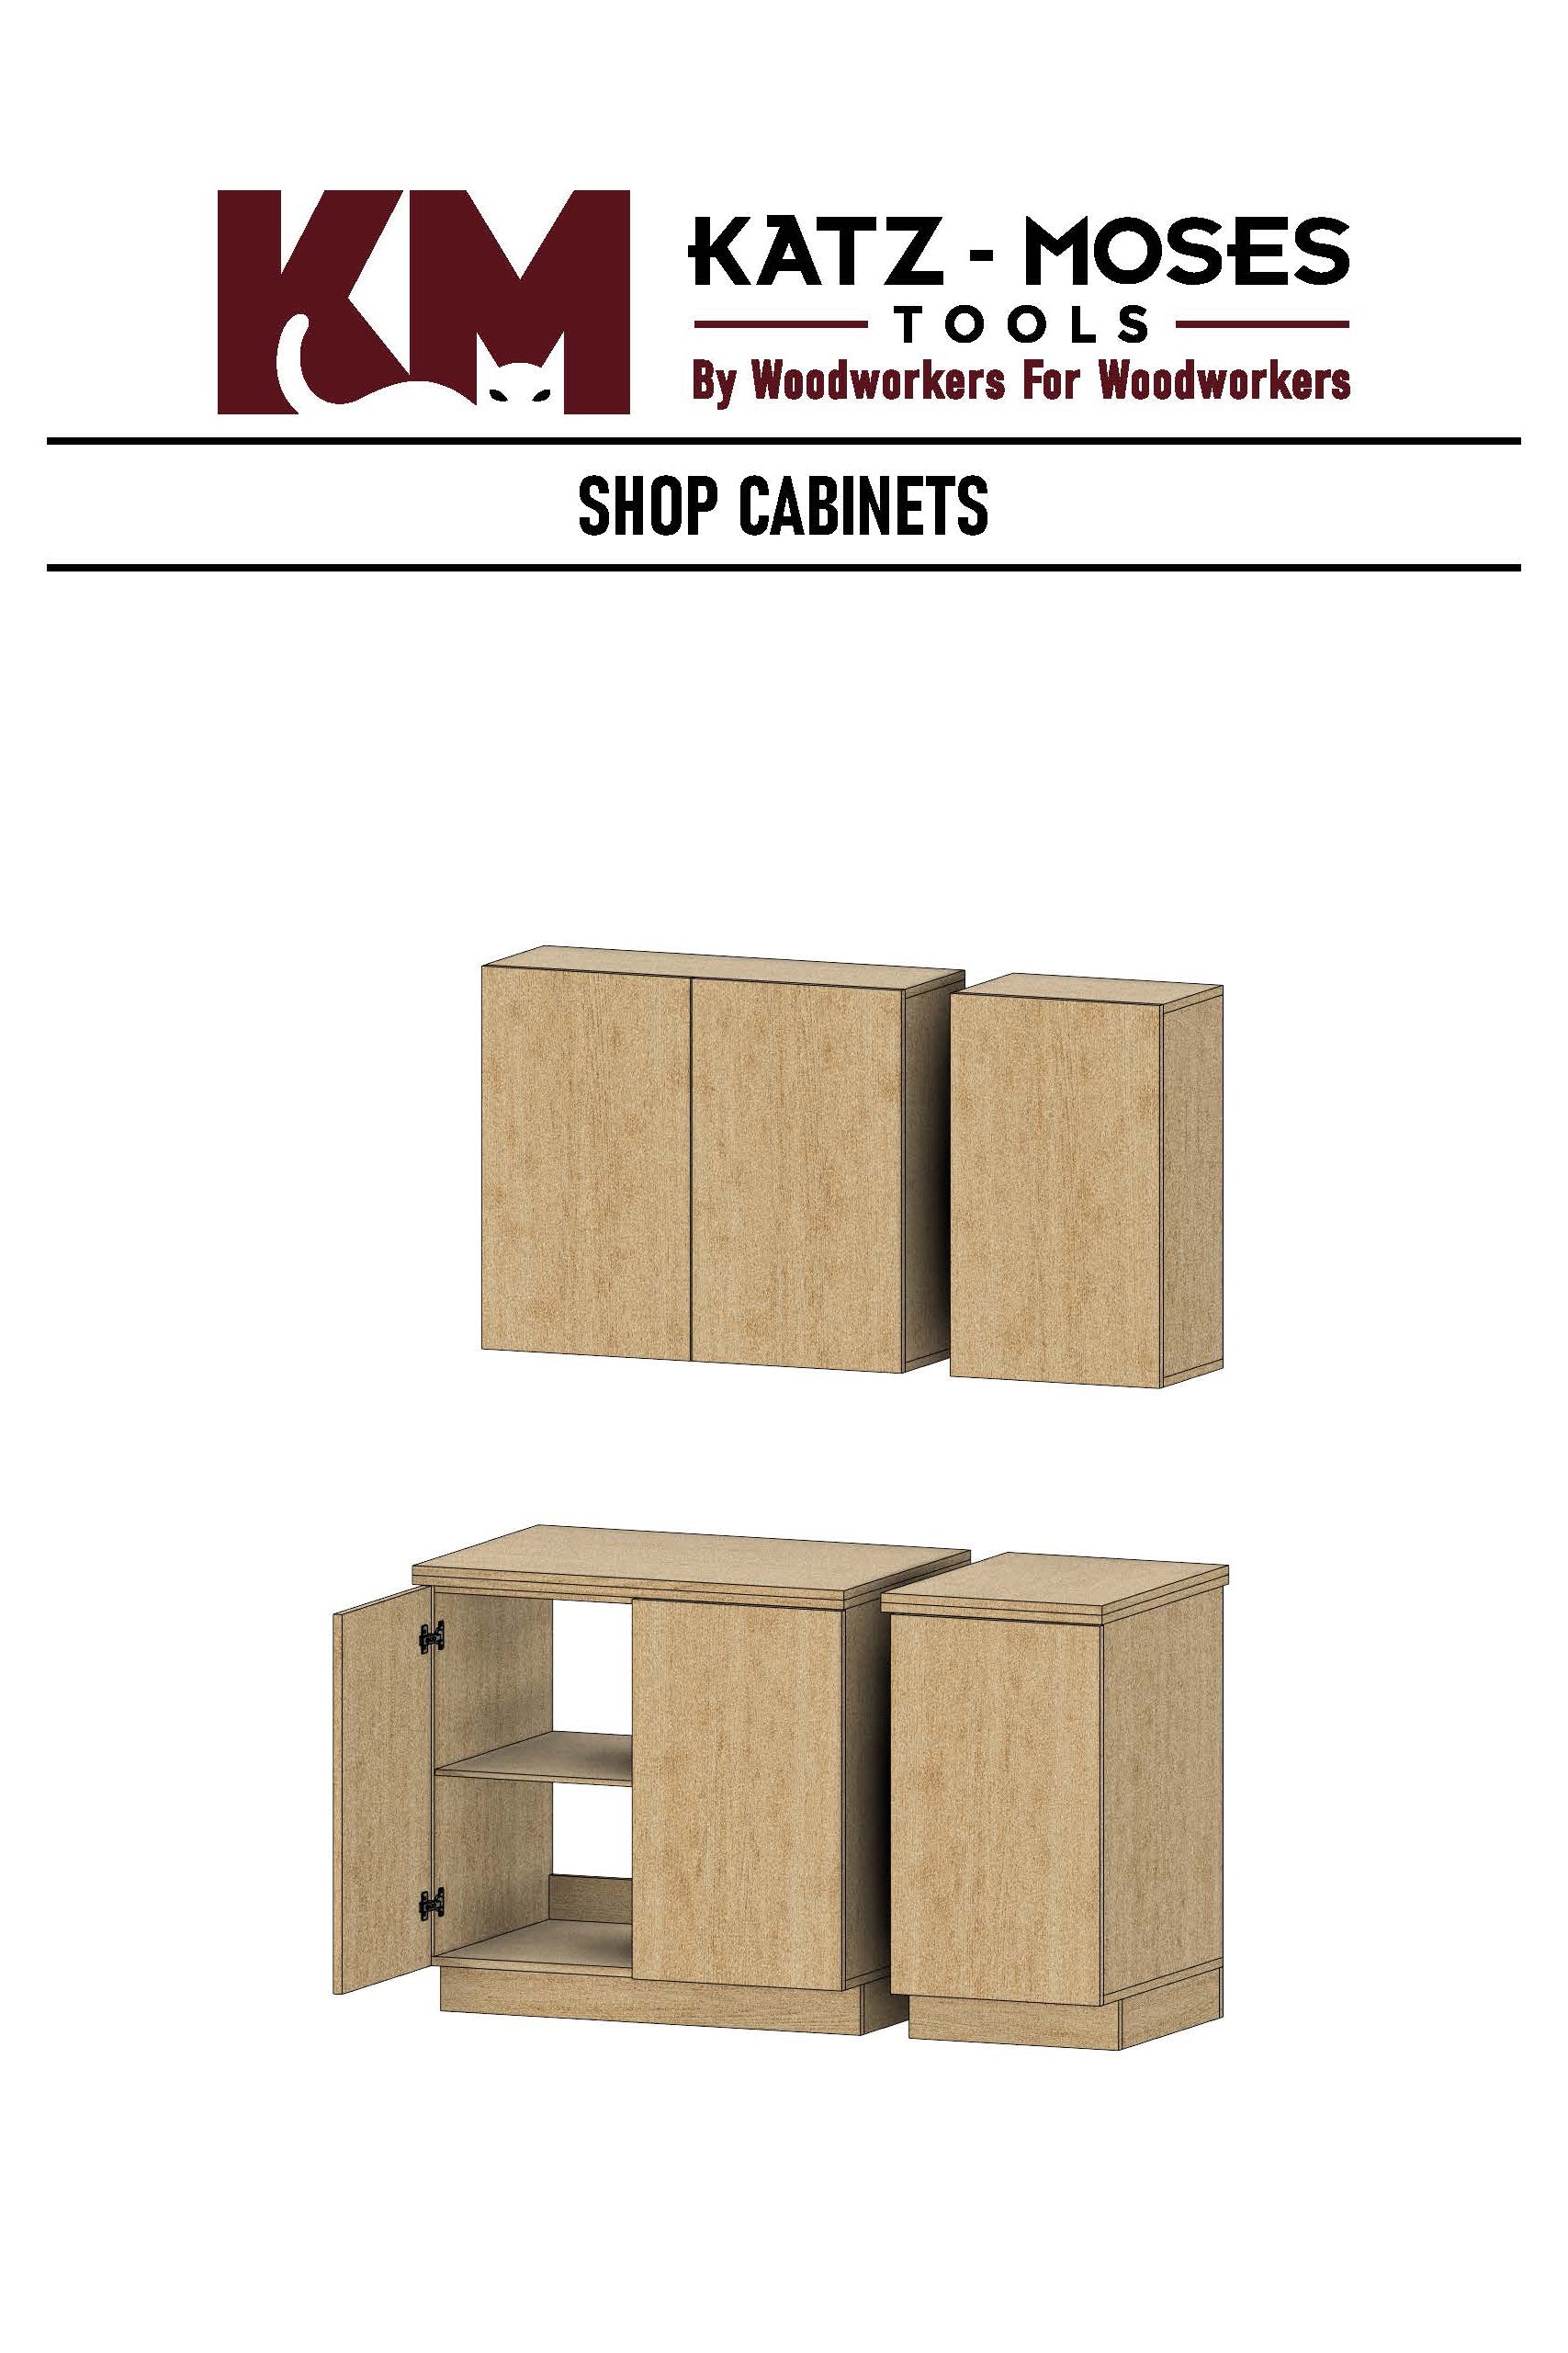 Shop Cabinet Build Plans